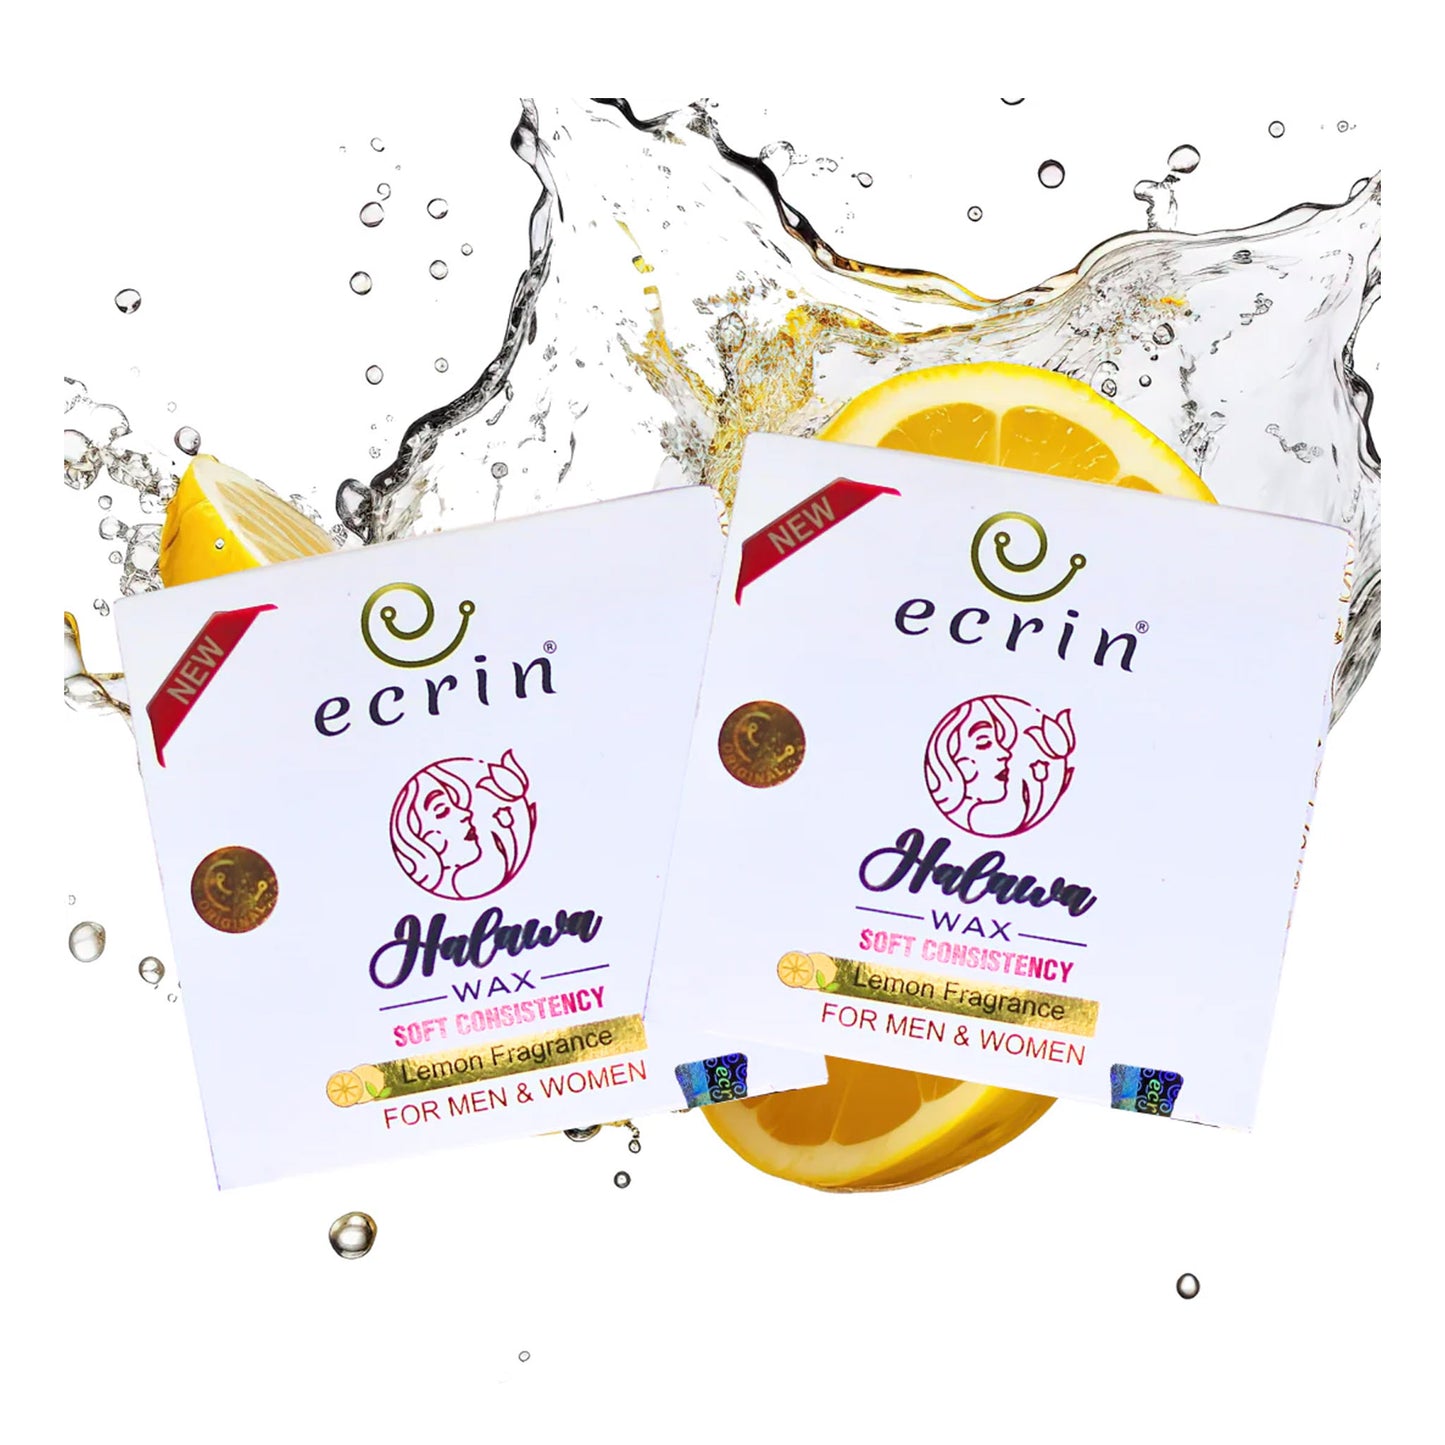 Ecrin Halawa Wax 100% Lemon & Sugar Base